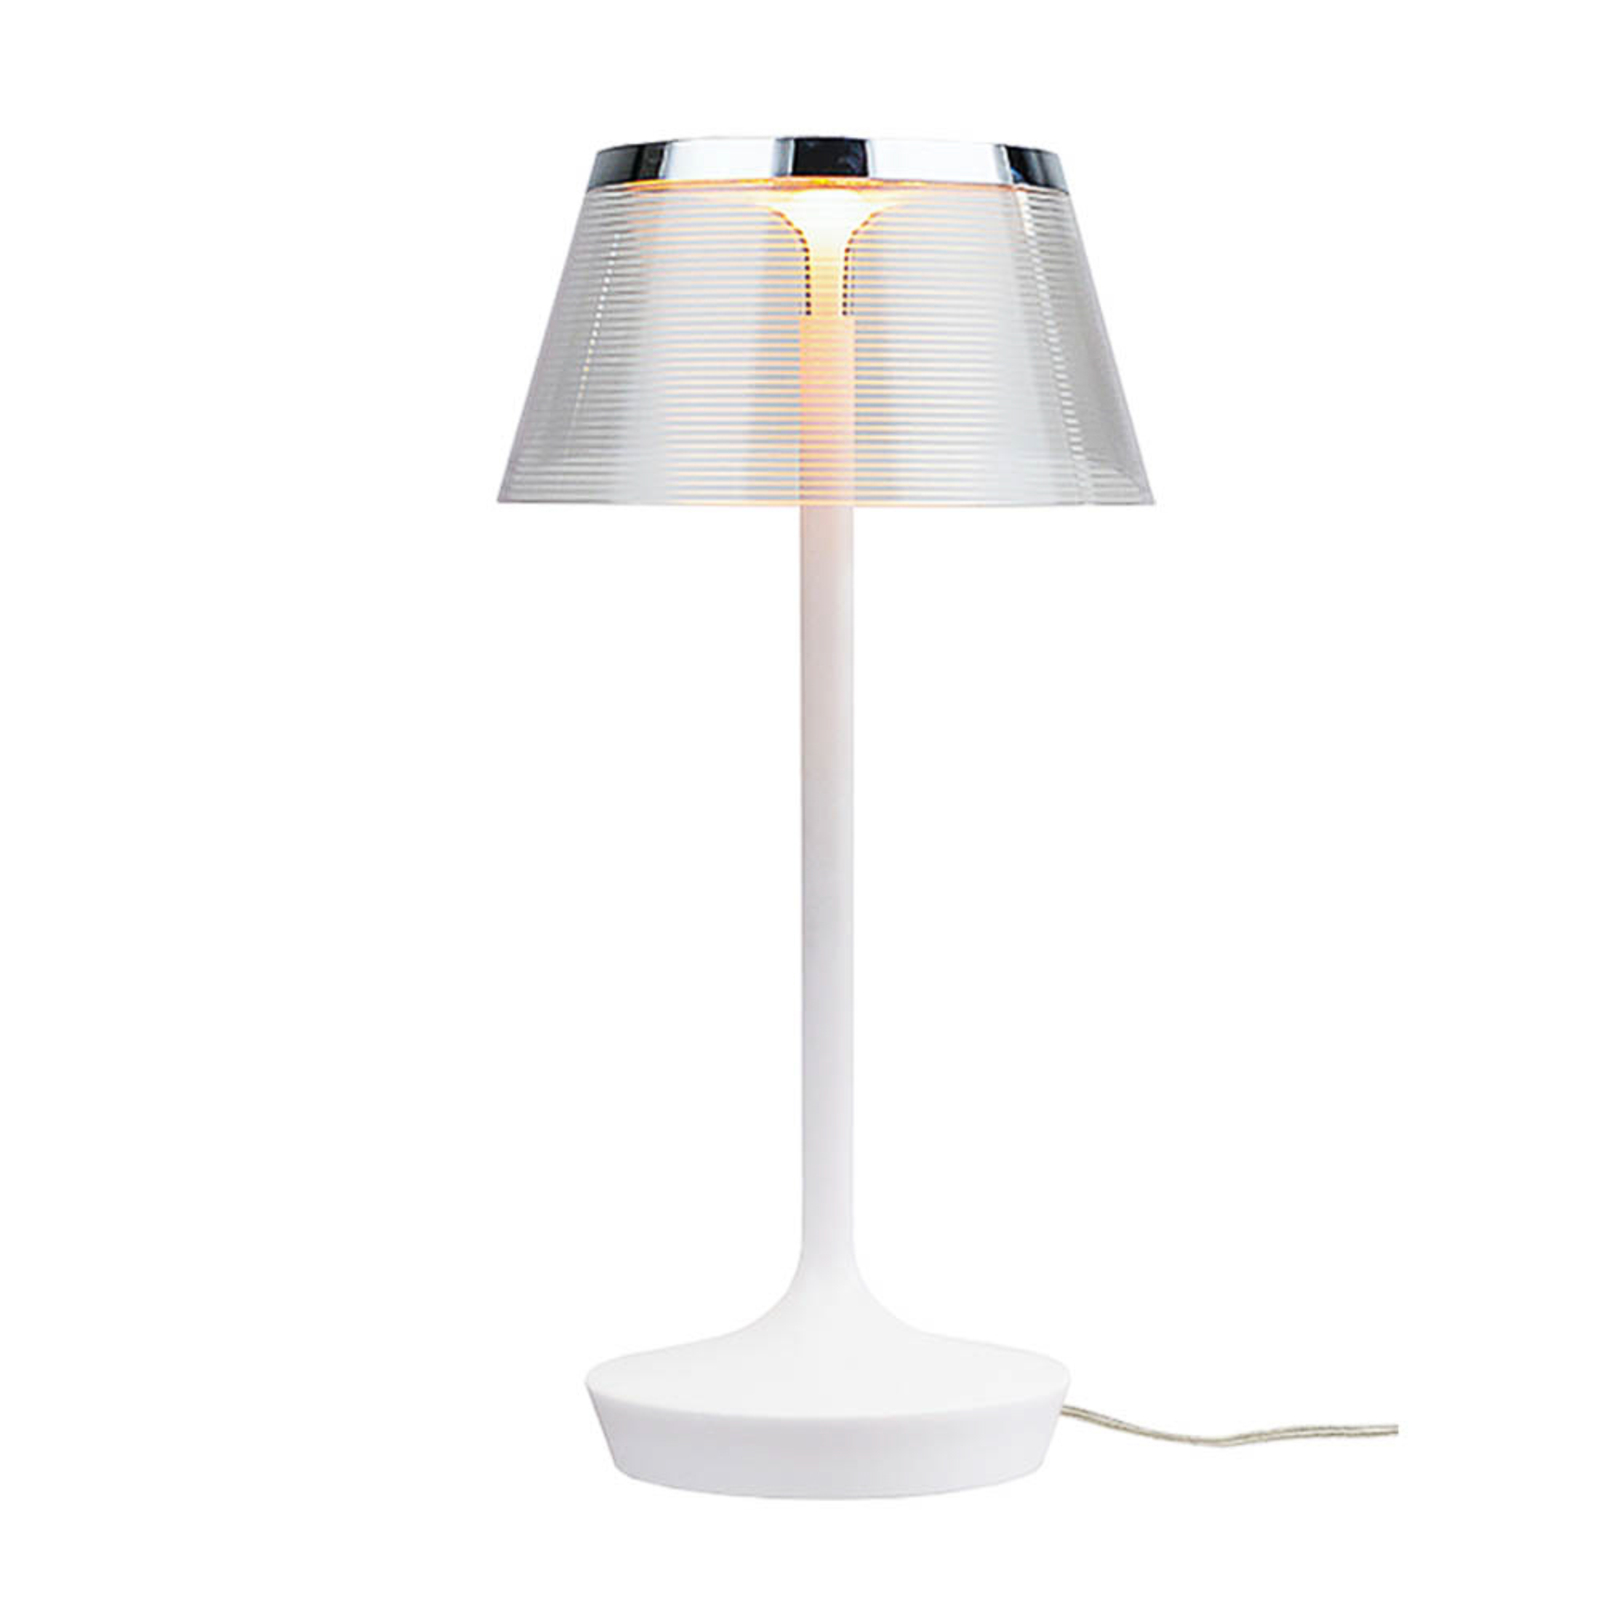 Aluminor La Petite Lampe lámpara mesa LED, blanca